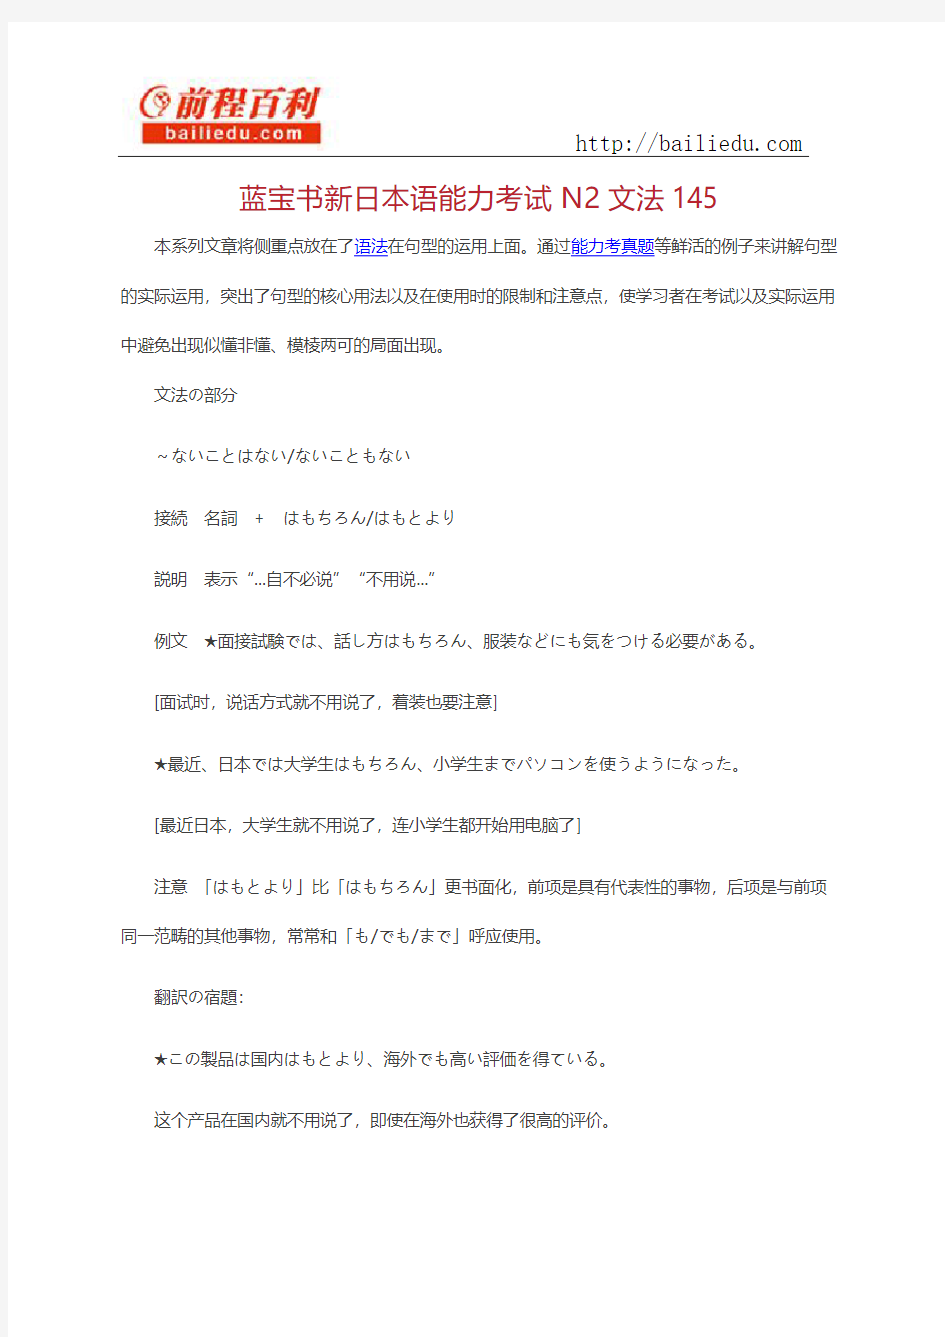 蓝宝书新日本语能力考试N2文法145